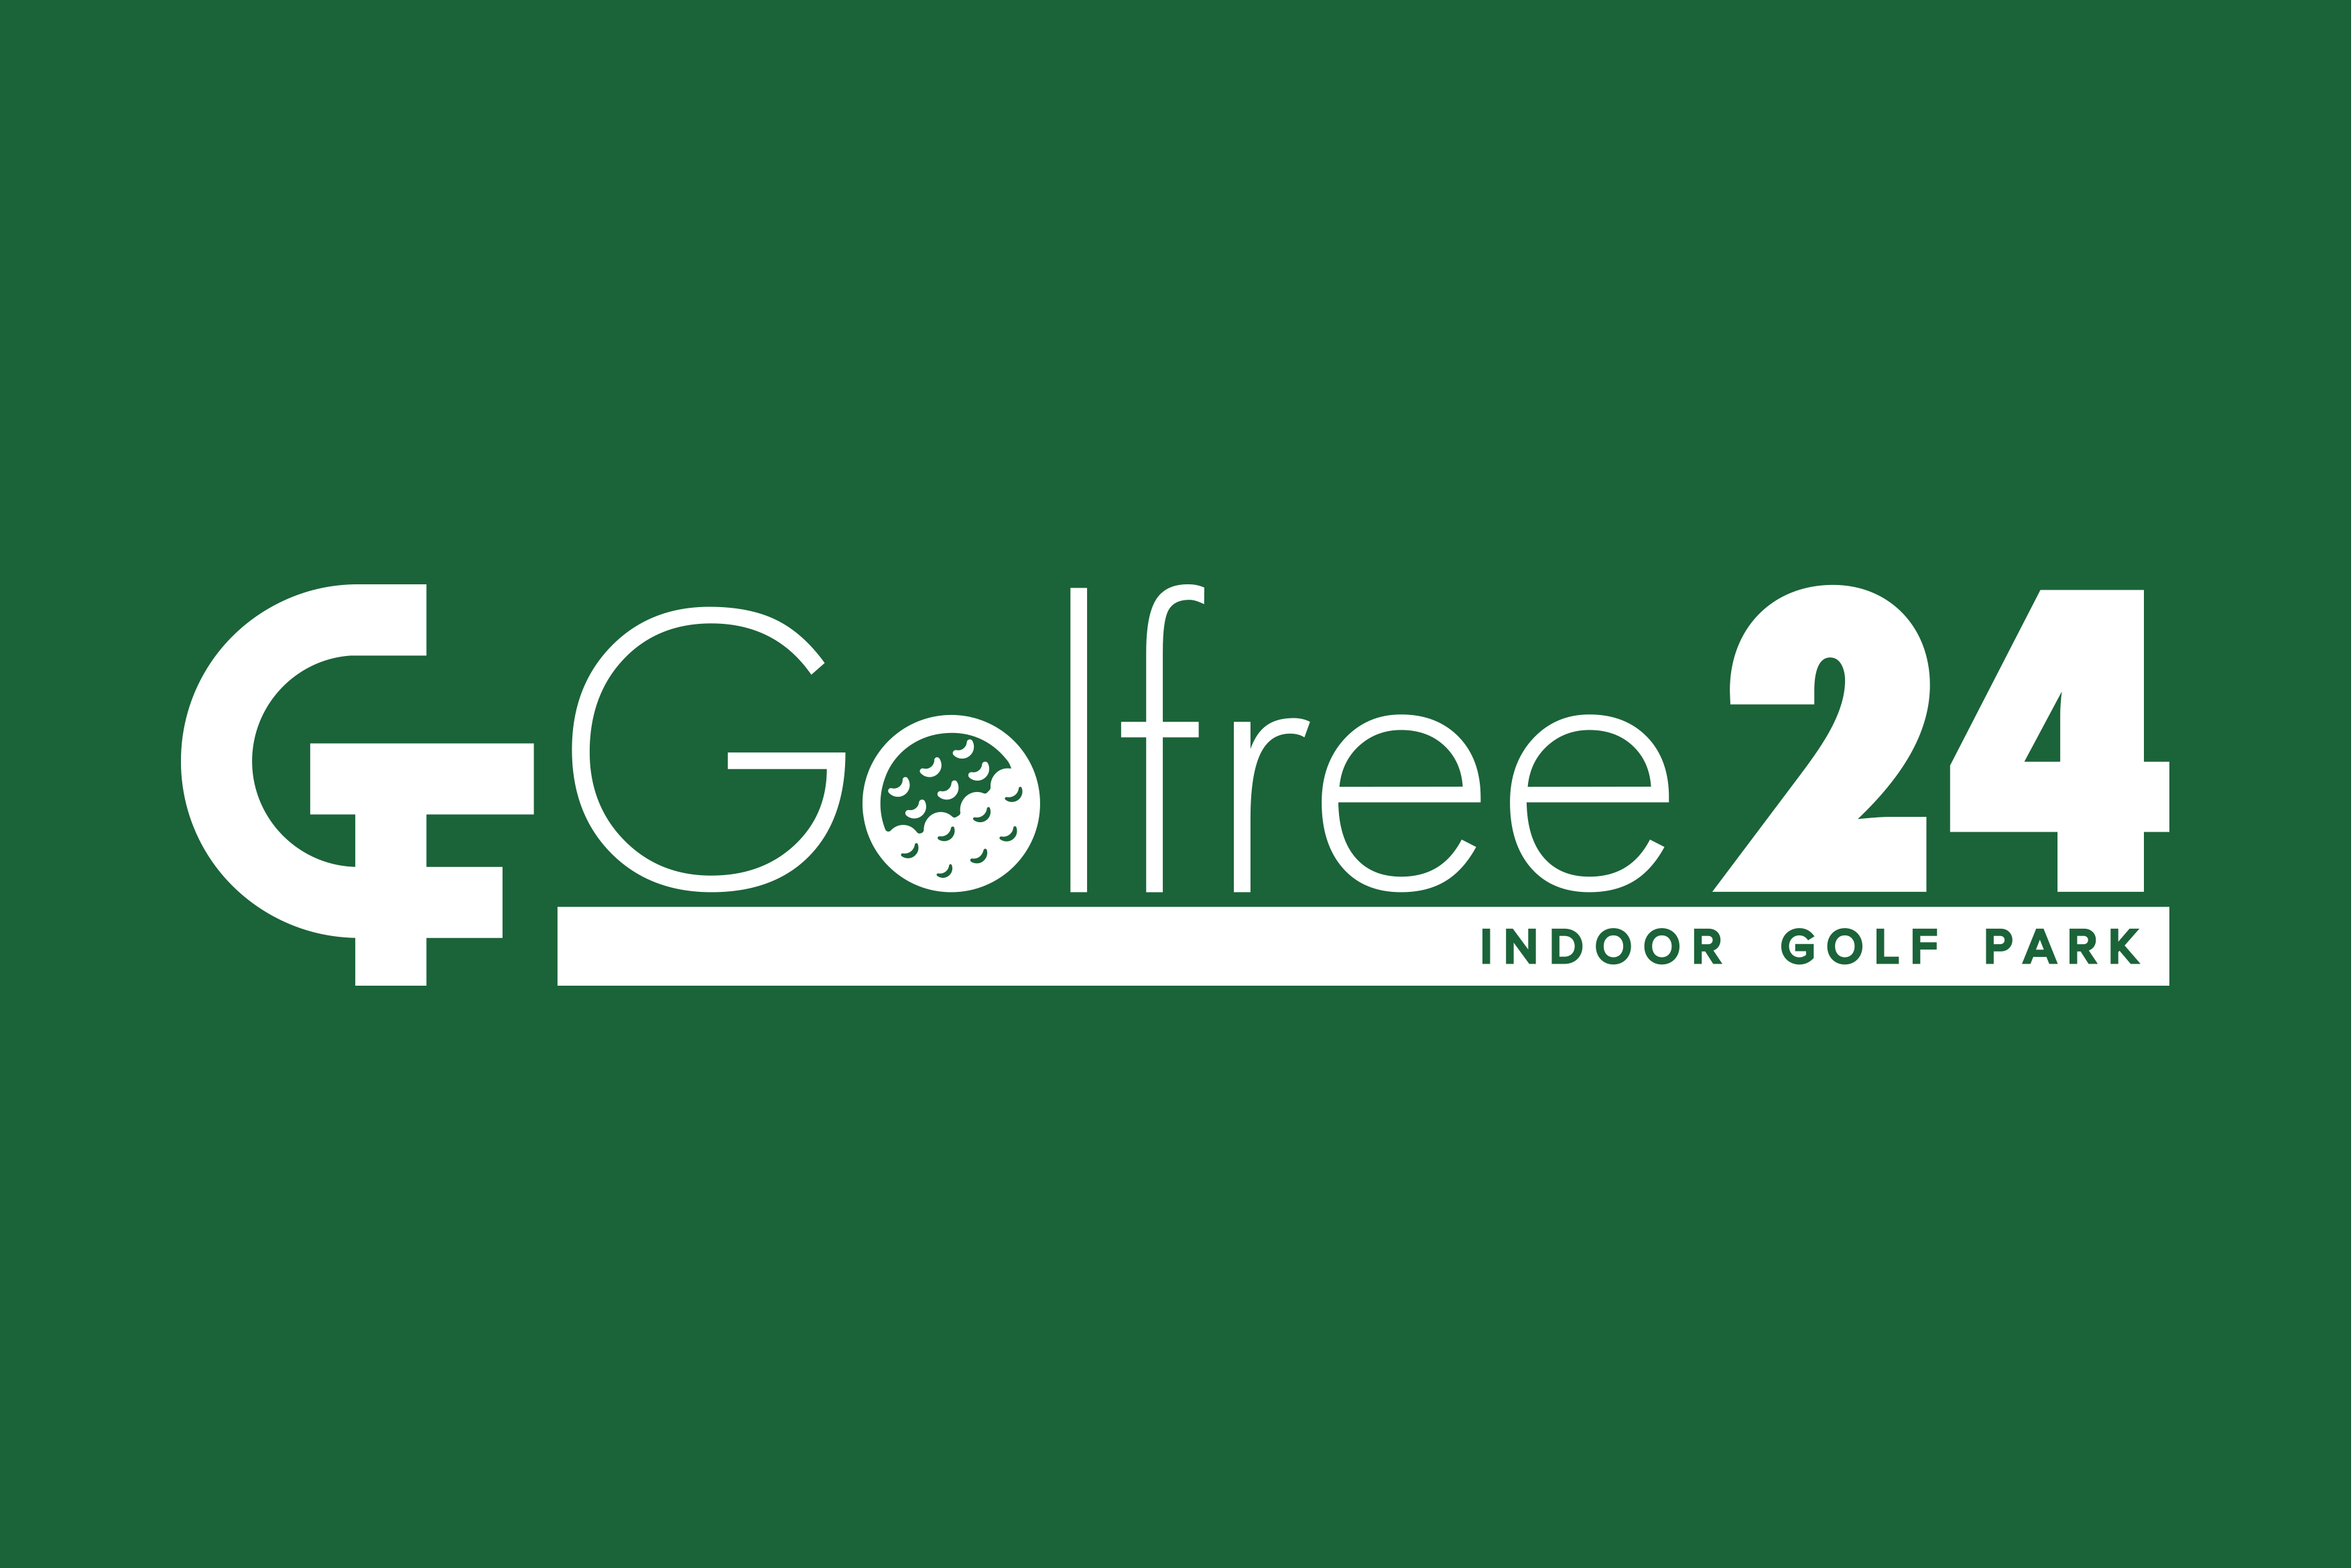 インドアゴルフパークGolfree24 公式サイト開設のお知らせ